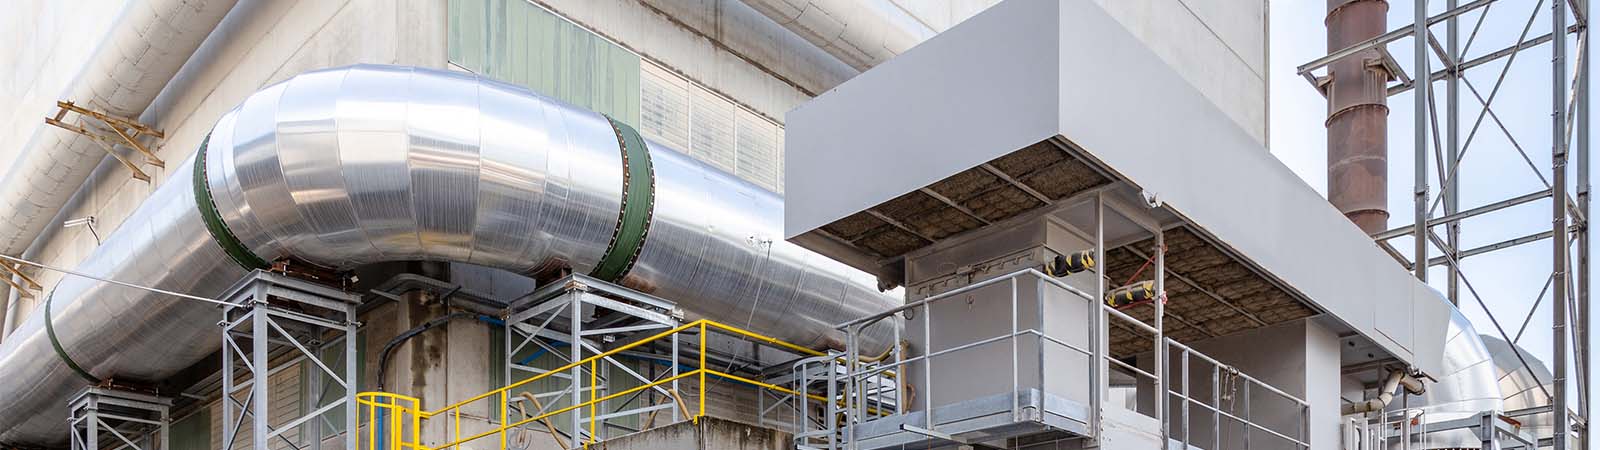 Керамический завод Piemme в Солиньяно инвестирует в систему когенерации SACMI